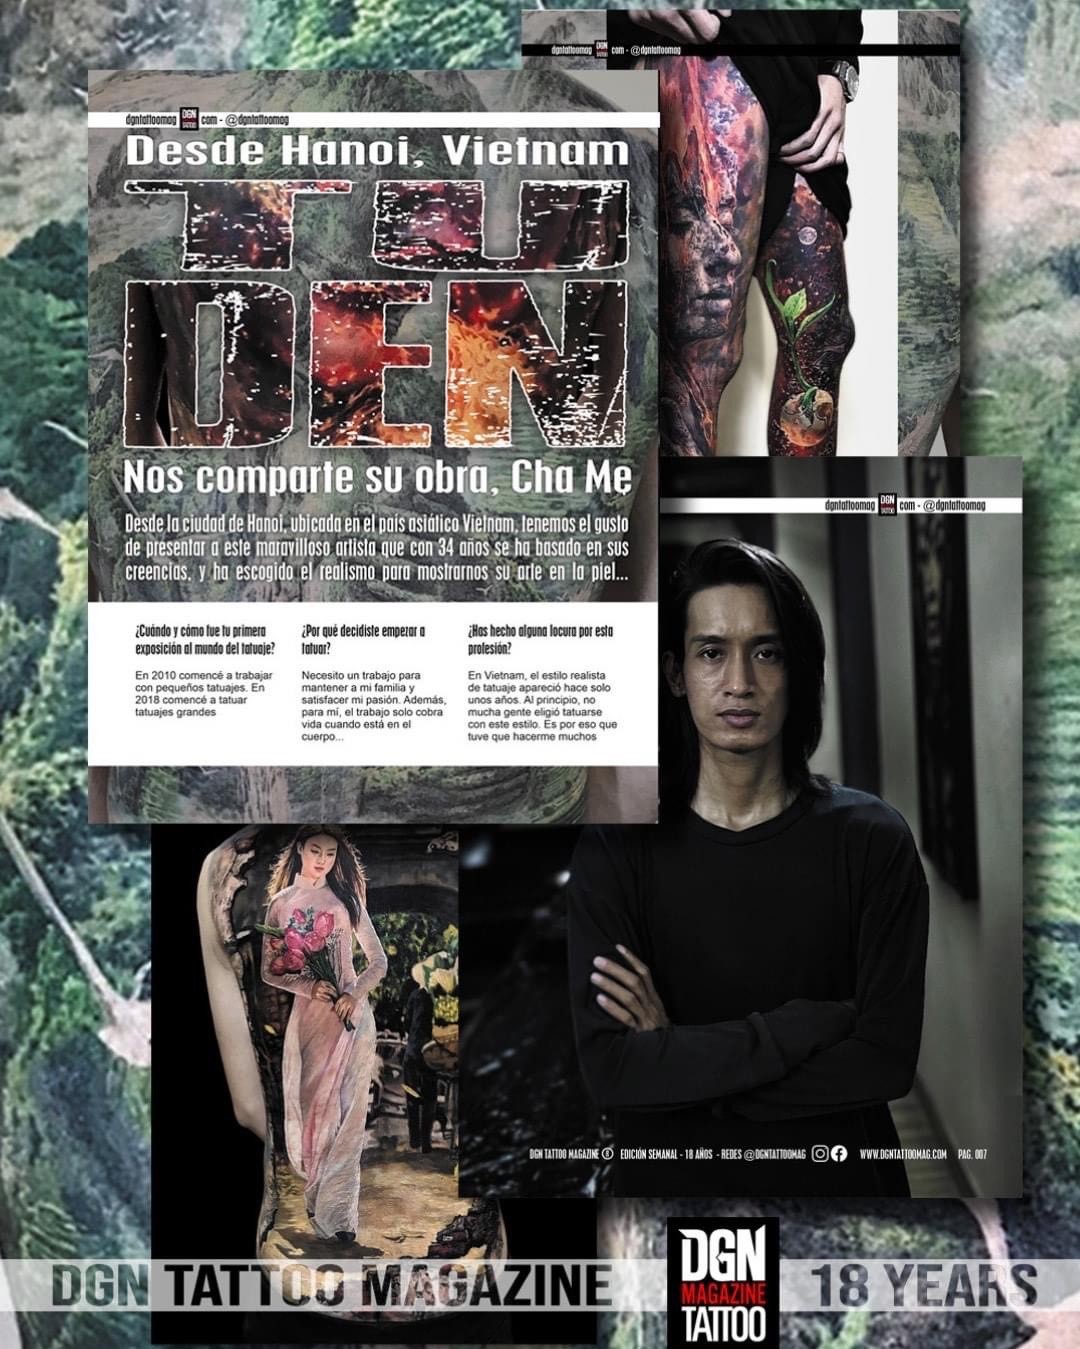 Artist Tu Den được nhiều tạp chí công nhận tài năng khi thực hiện nhiều tác phẩm về nét đẹp văn hóa Việt Nam